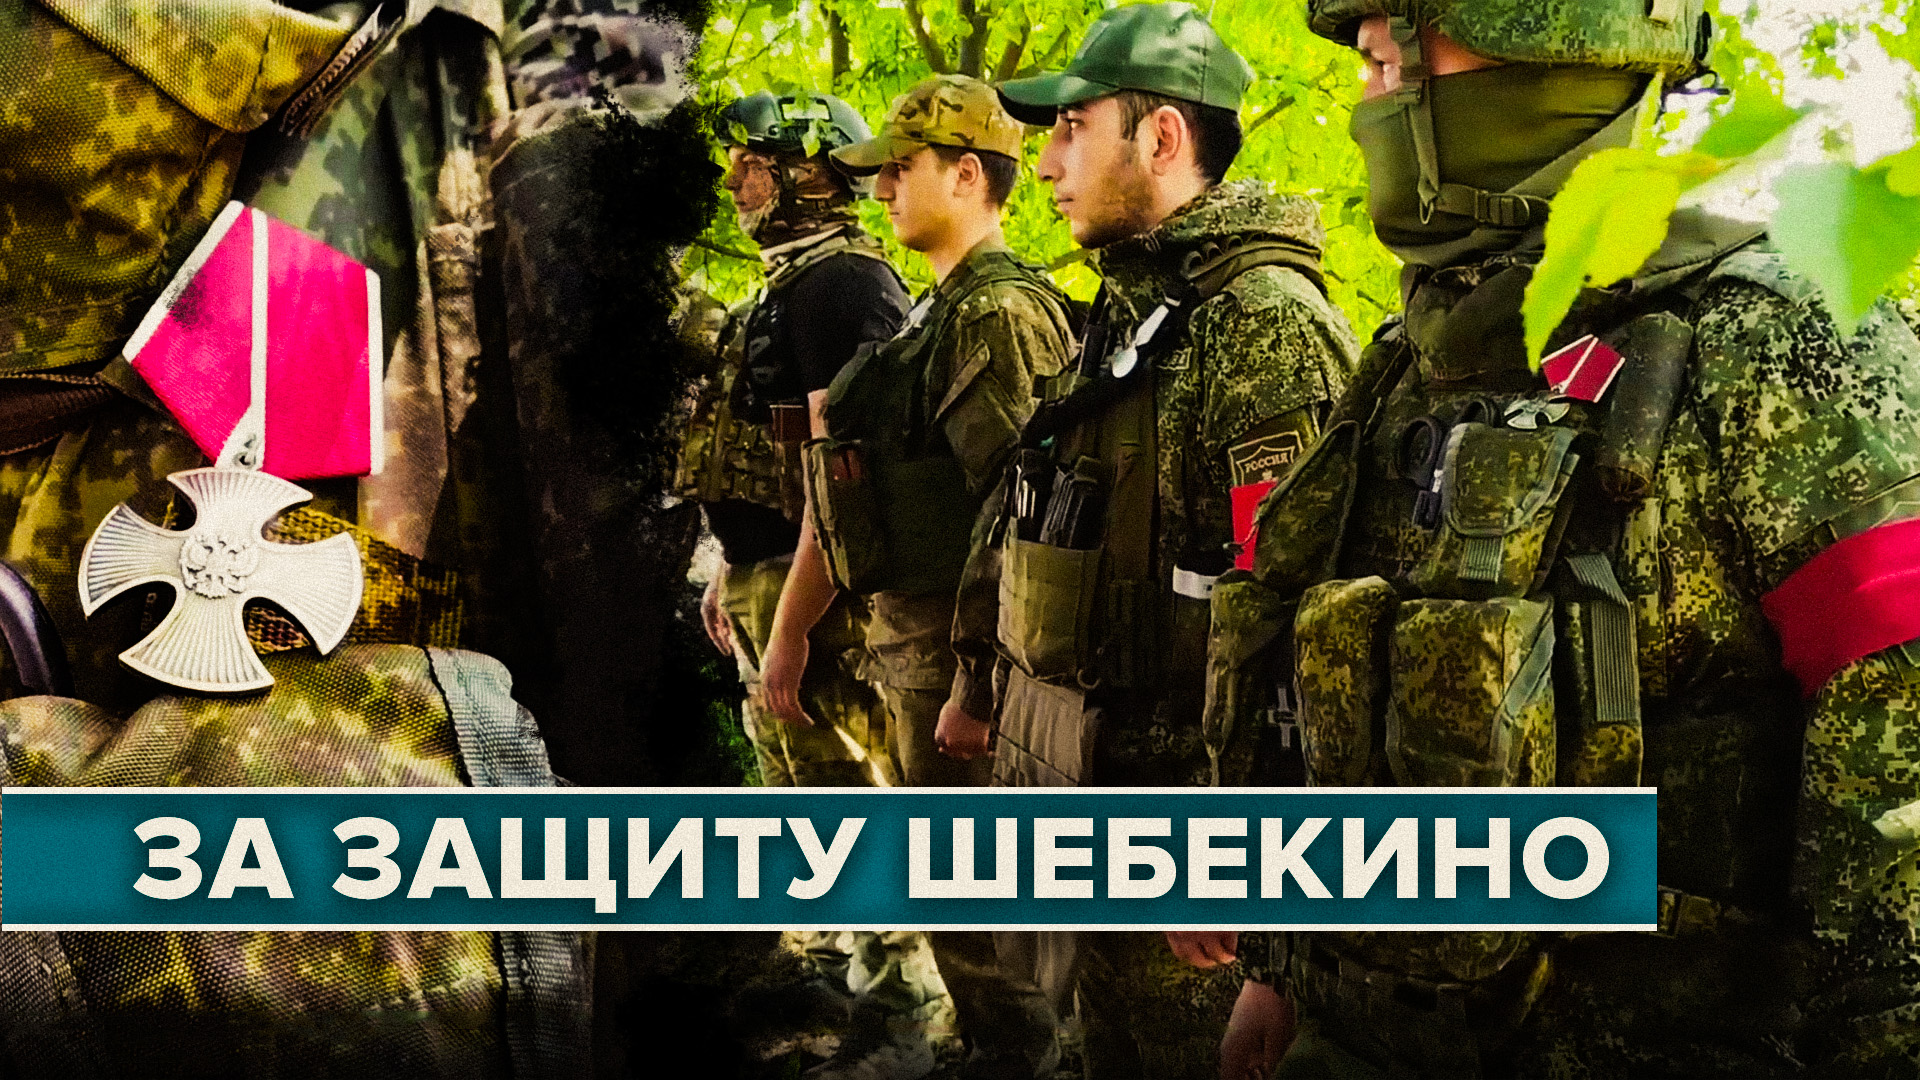 Награждение военнослужащих группировки войск «Запад» за защиту Шебекино